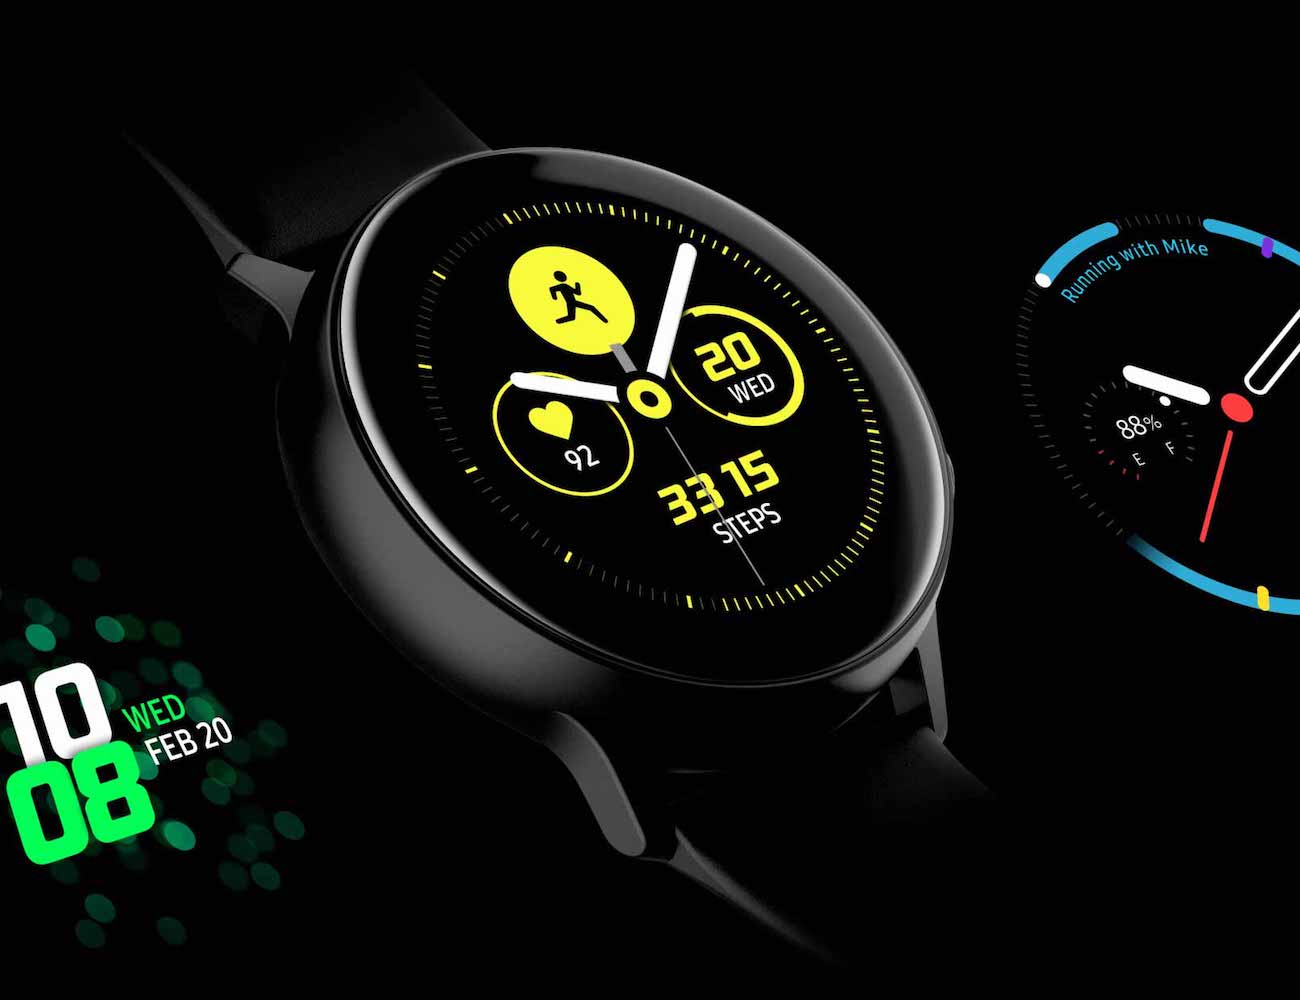 Chytré hodinky Samsung Galaxy Watch Active - klady a zápory